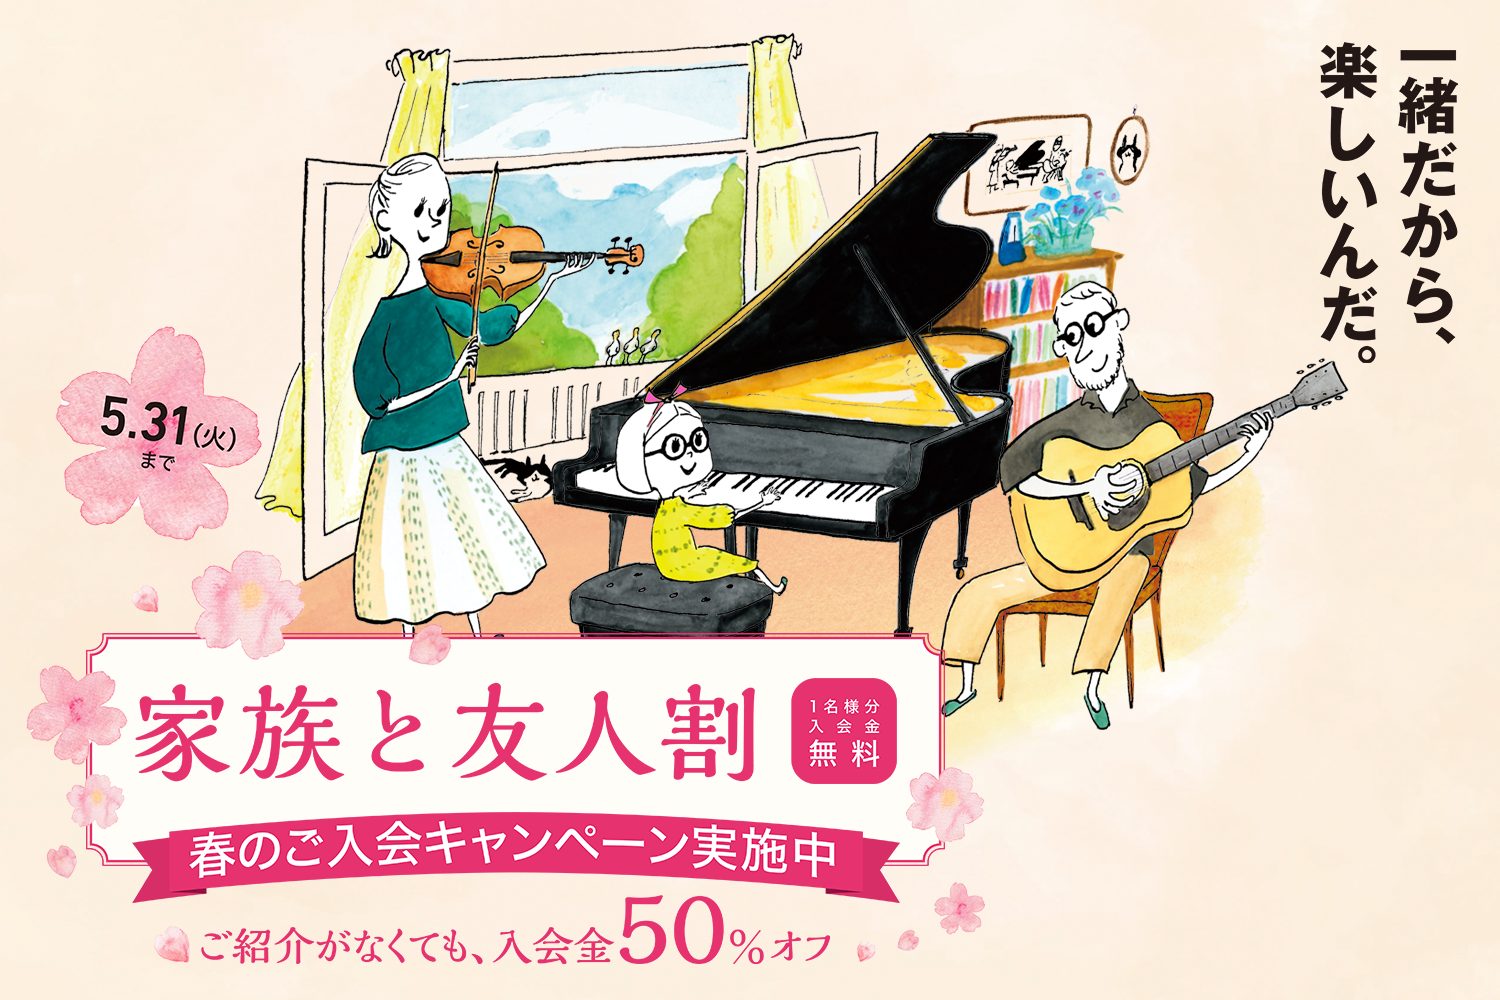 【音楽教室】入会金半額!! 2022年春の入会金割引キャンペーン実施中